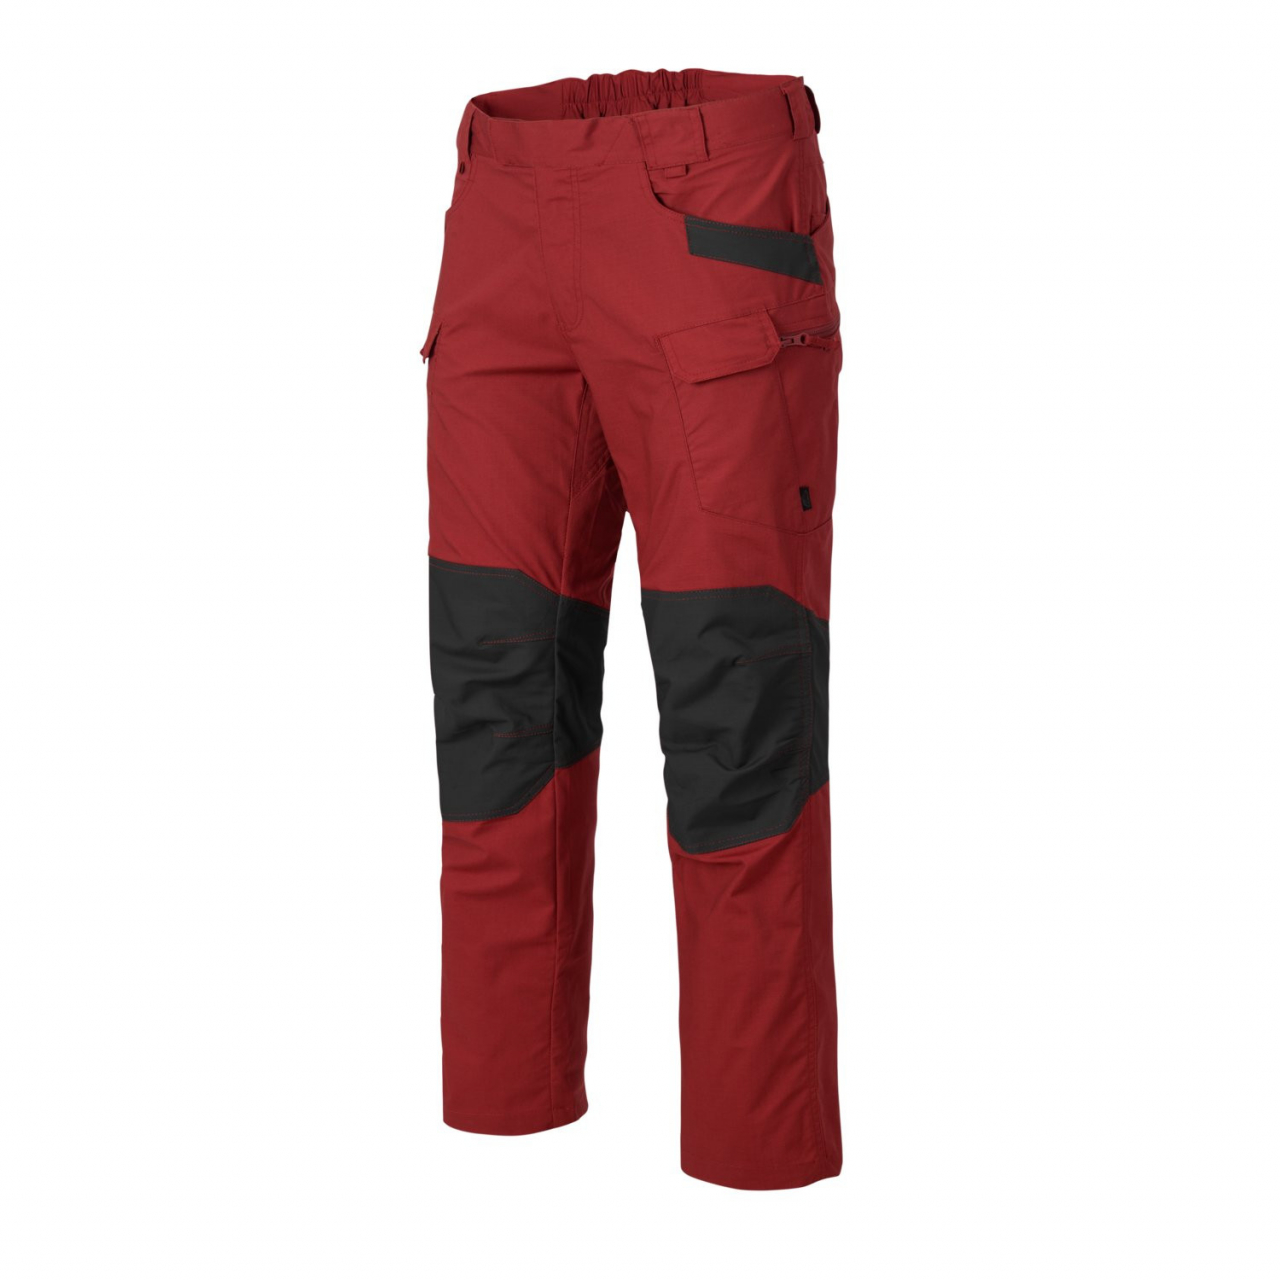 Kalhoty Helikon UTP PolyCotton Ripstop - červené-šedé, XS